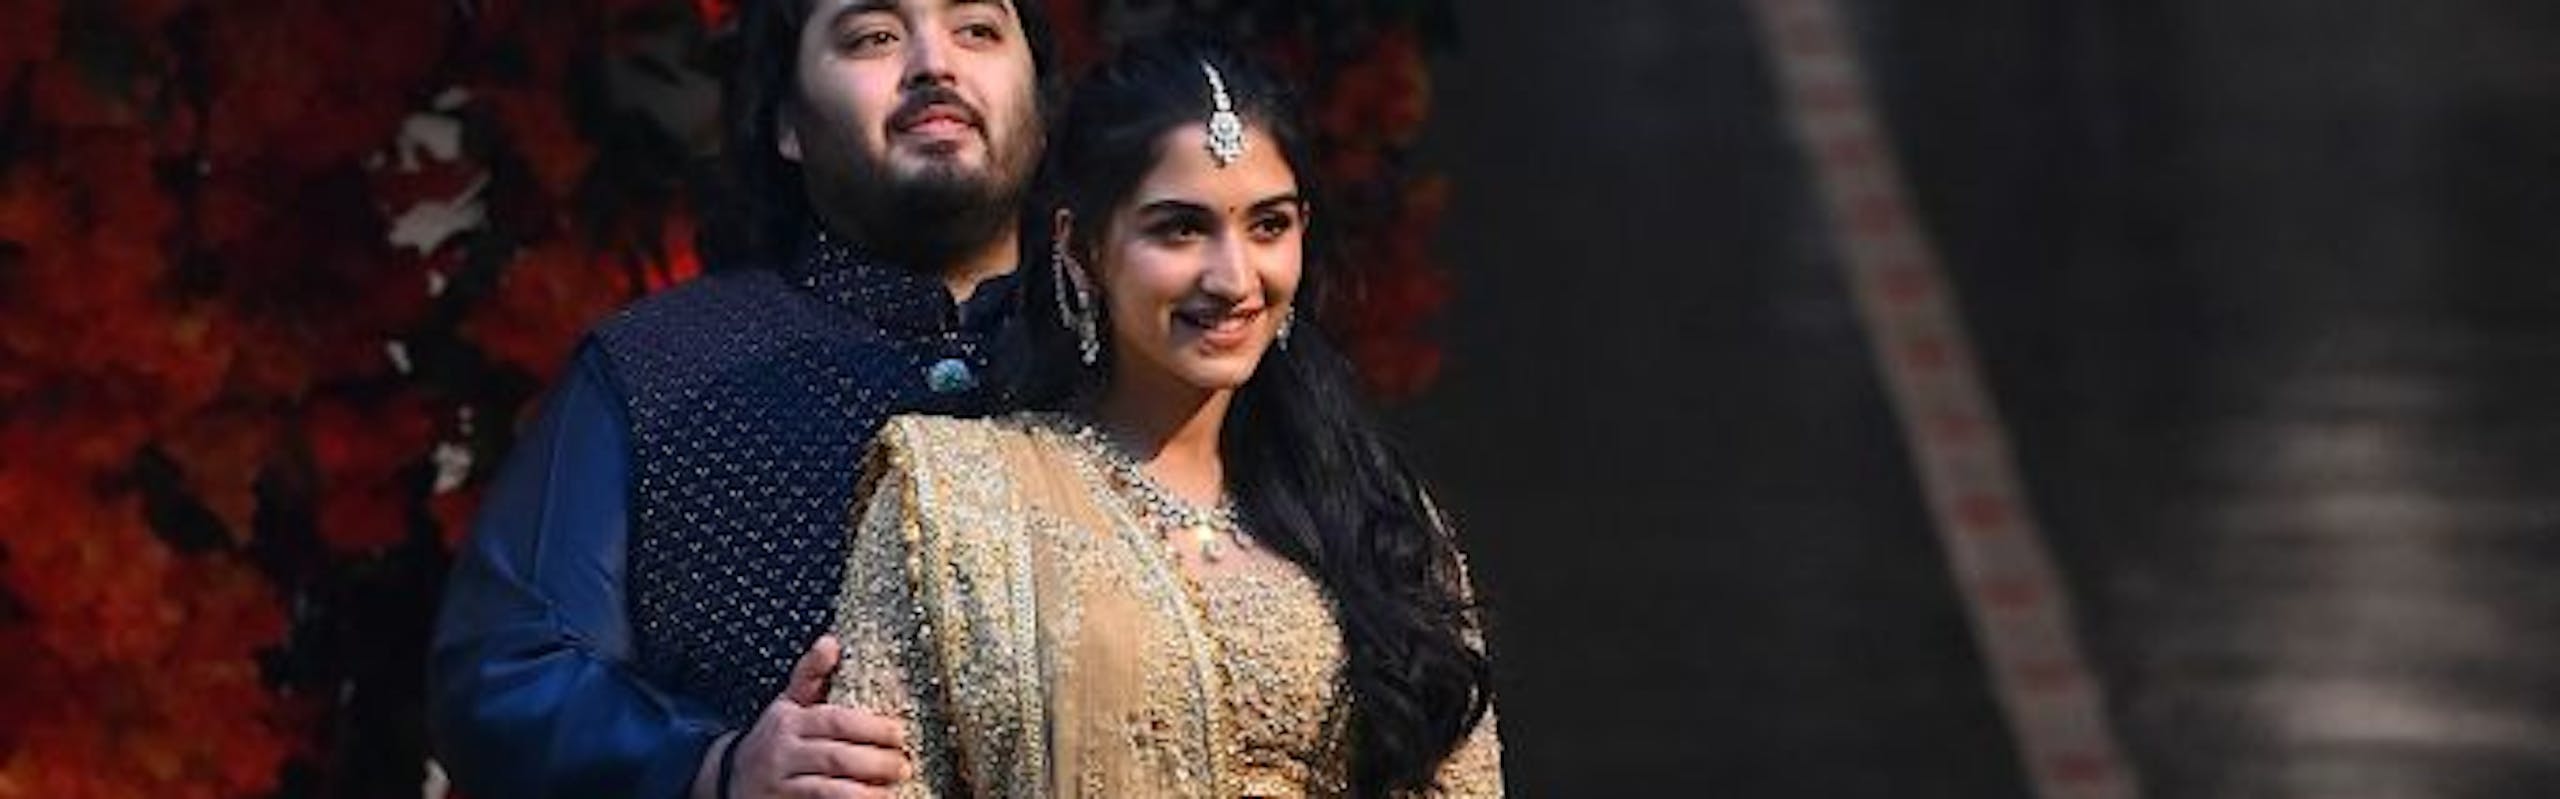 anant ambani wedding : radhika merchant : indian wedding